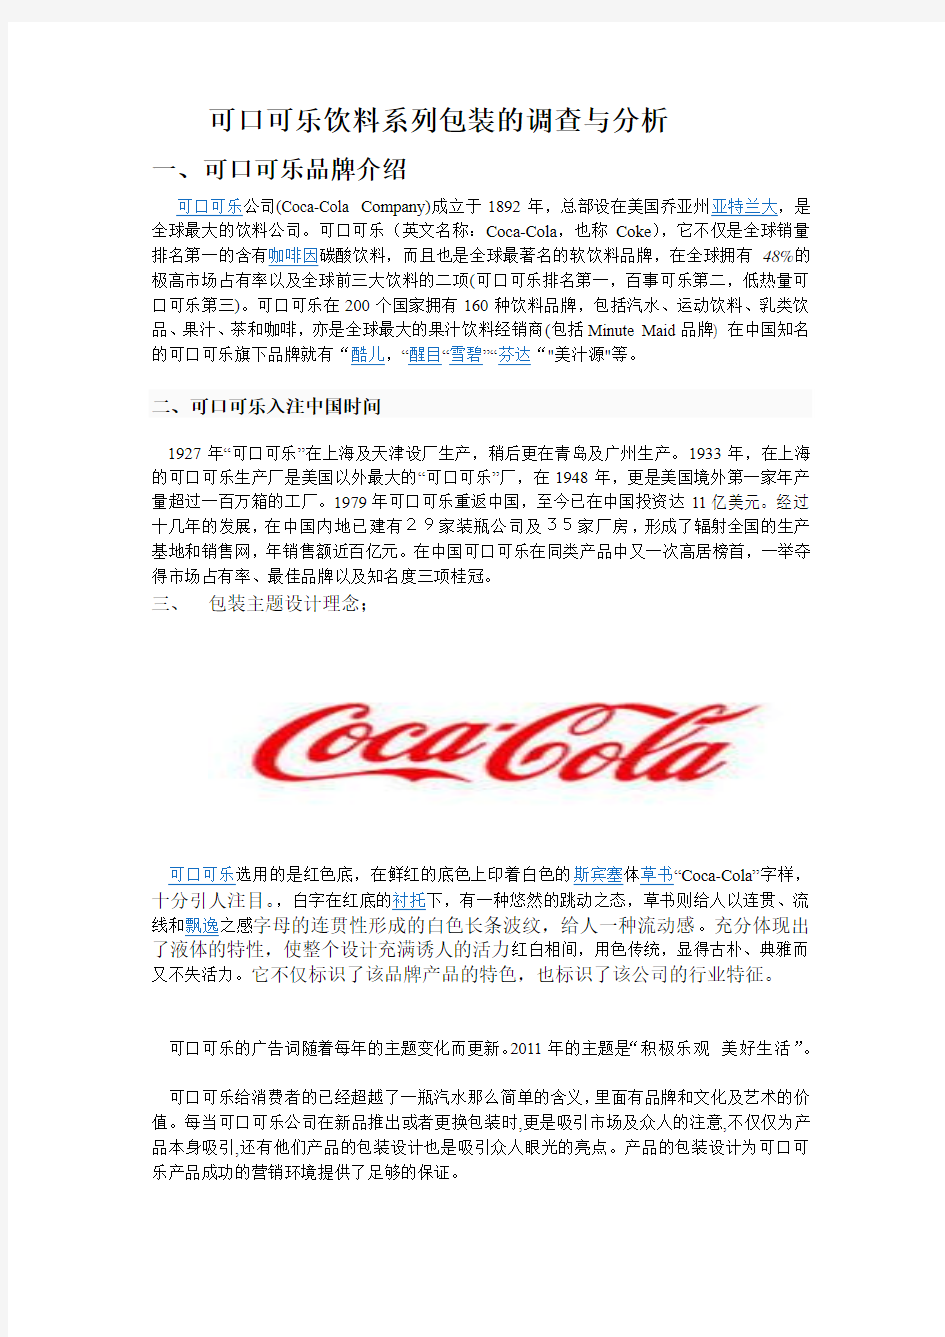 可口可乐饮料系列包装的调查与分析